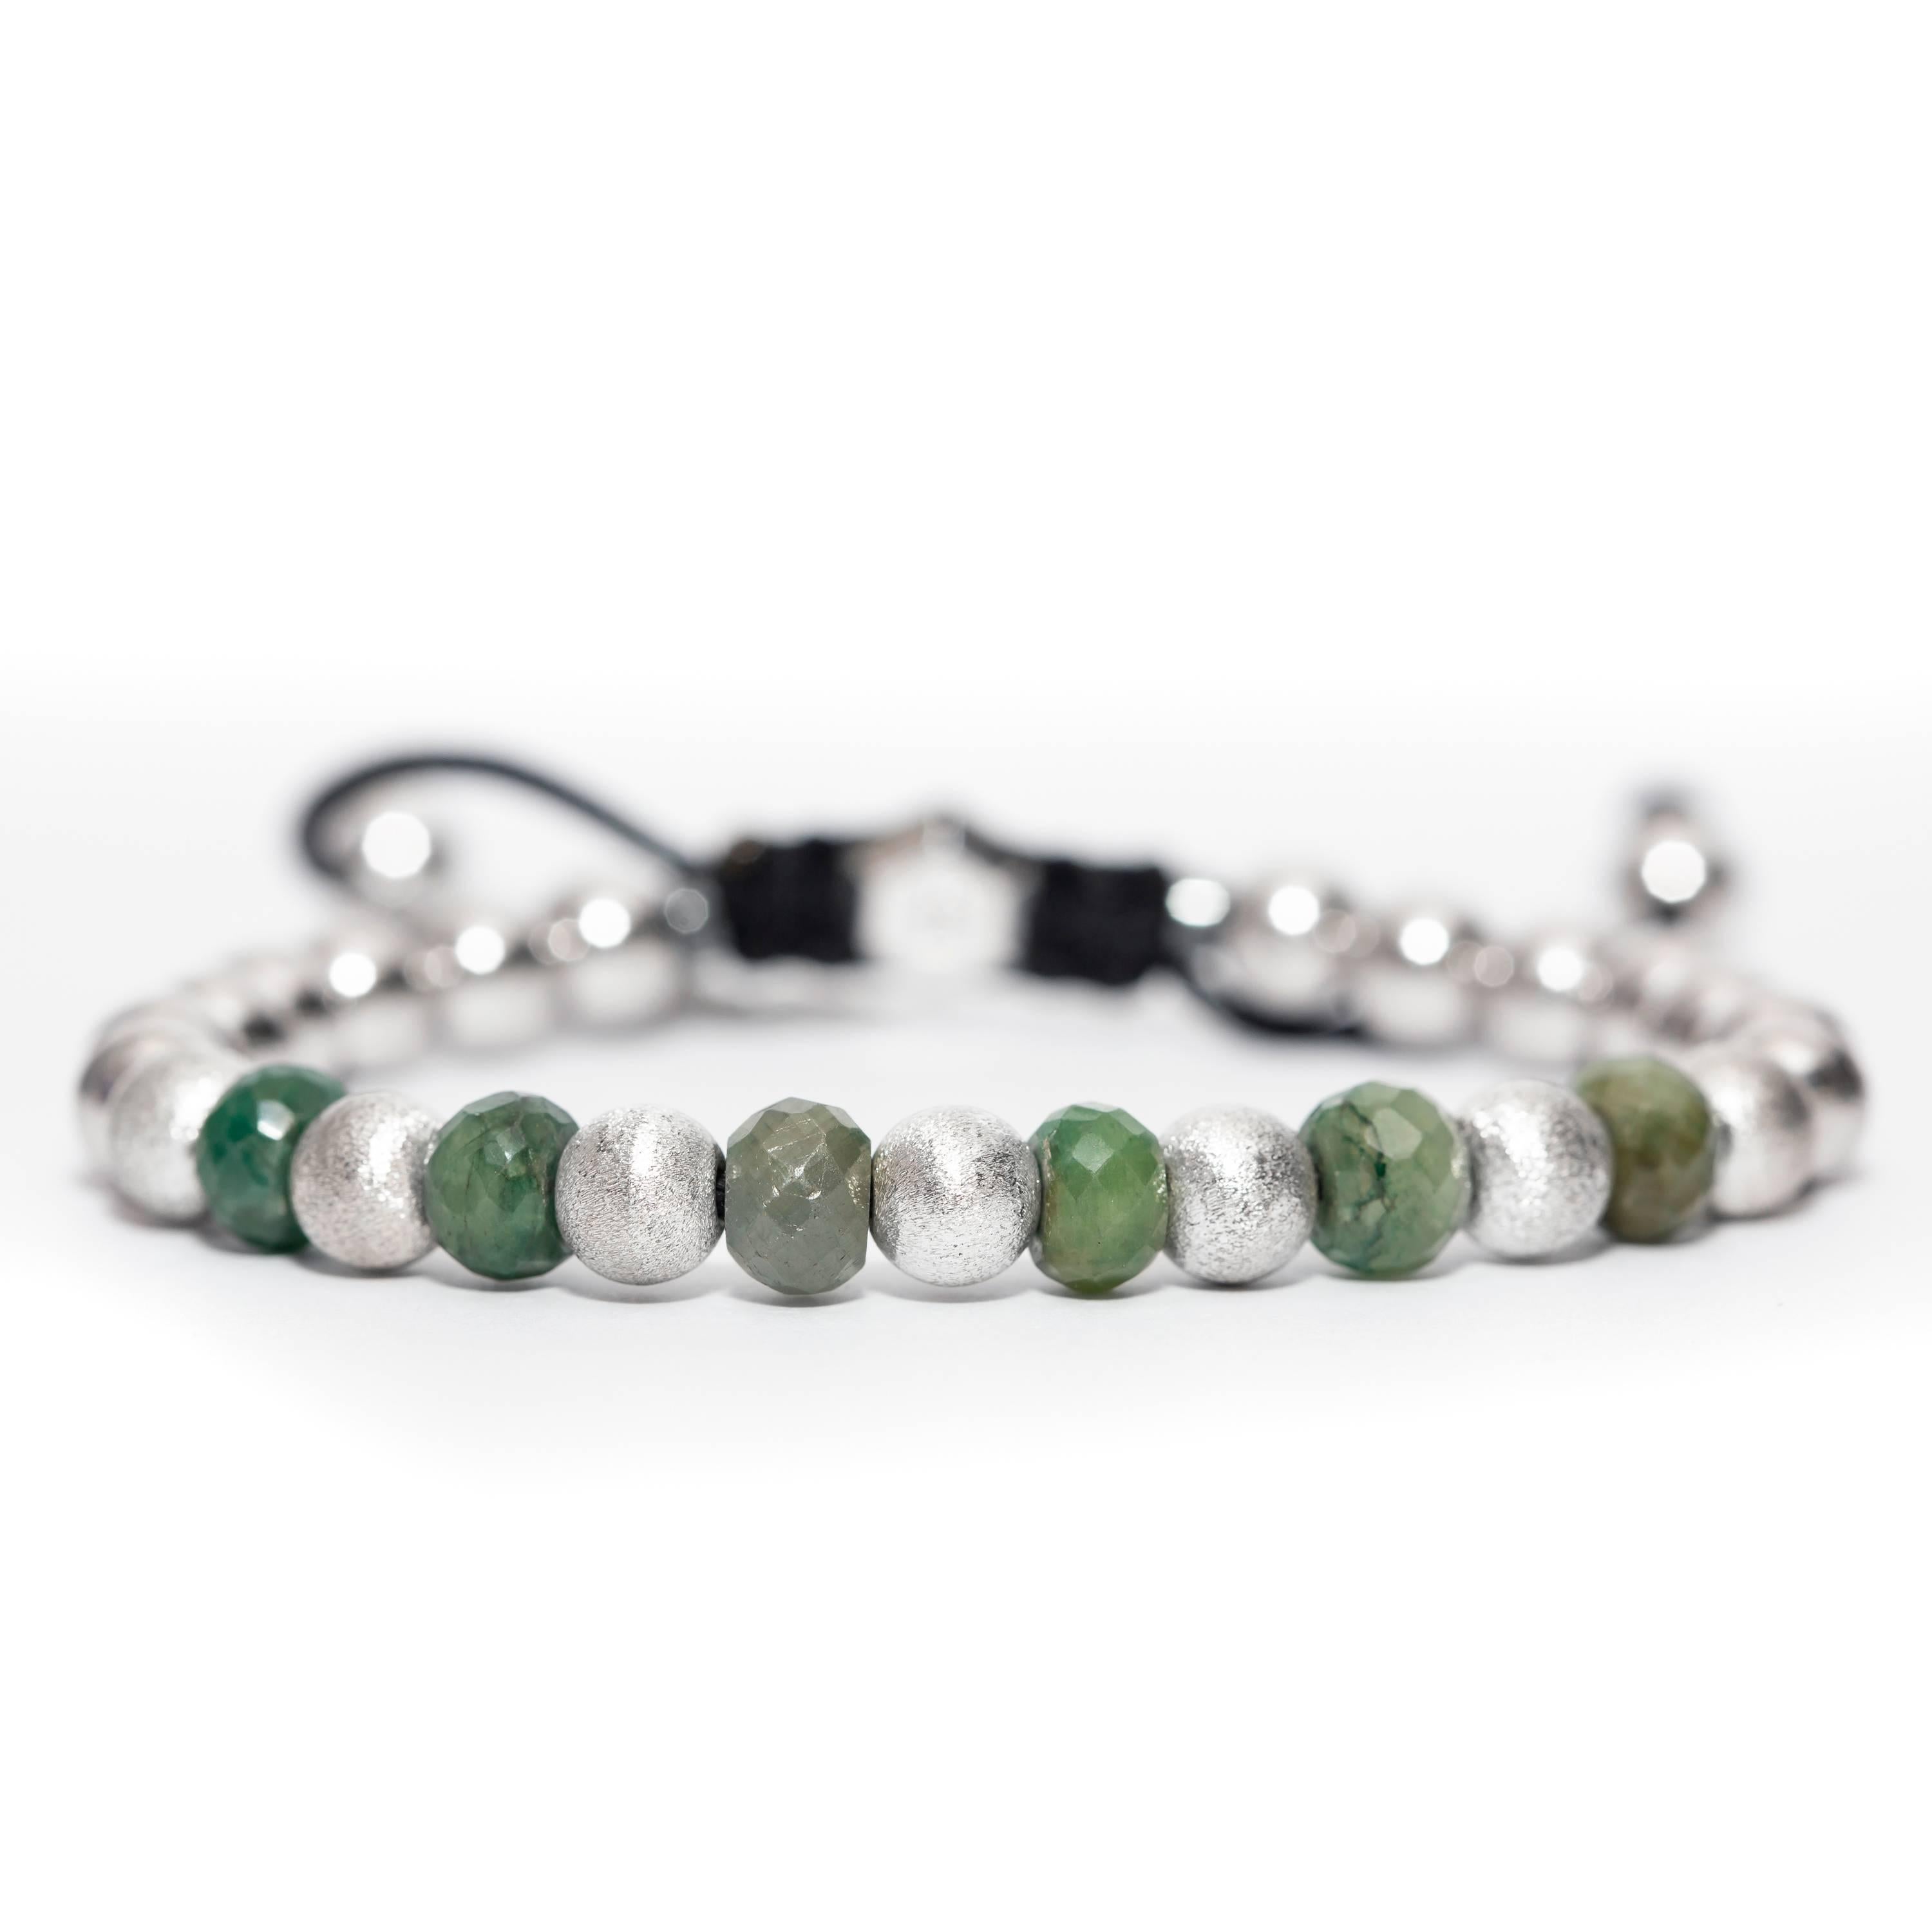 Dieses 11,76 Karat Smaragd Edelstahl und Silber Perlenarmband von The Original Tresor Paris Tendresse Vert Collection. Dieses Armband besteht aus 7 satinierten Perlen und 14 glänzenden Edelstahlperlen sowie zwei Magnetitringen mit einem silbernen